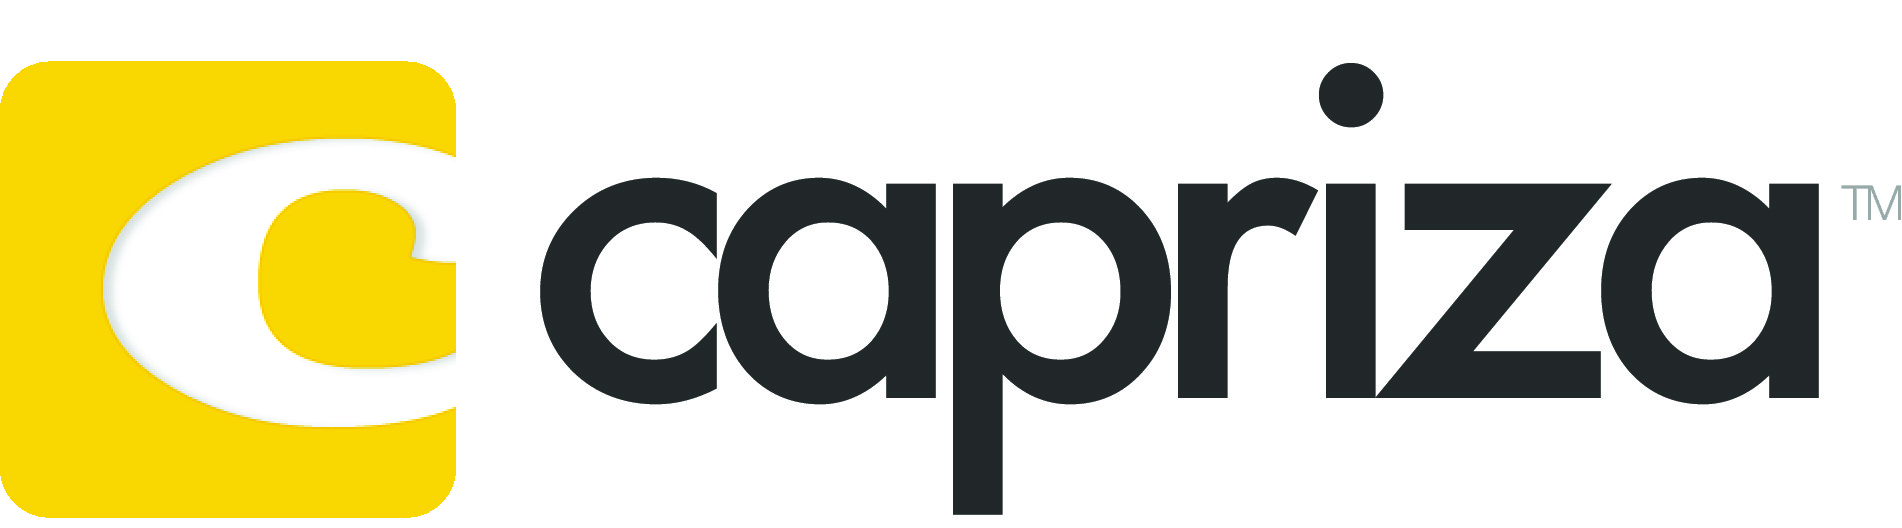 Capriza Launches Partner Prog